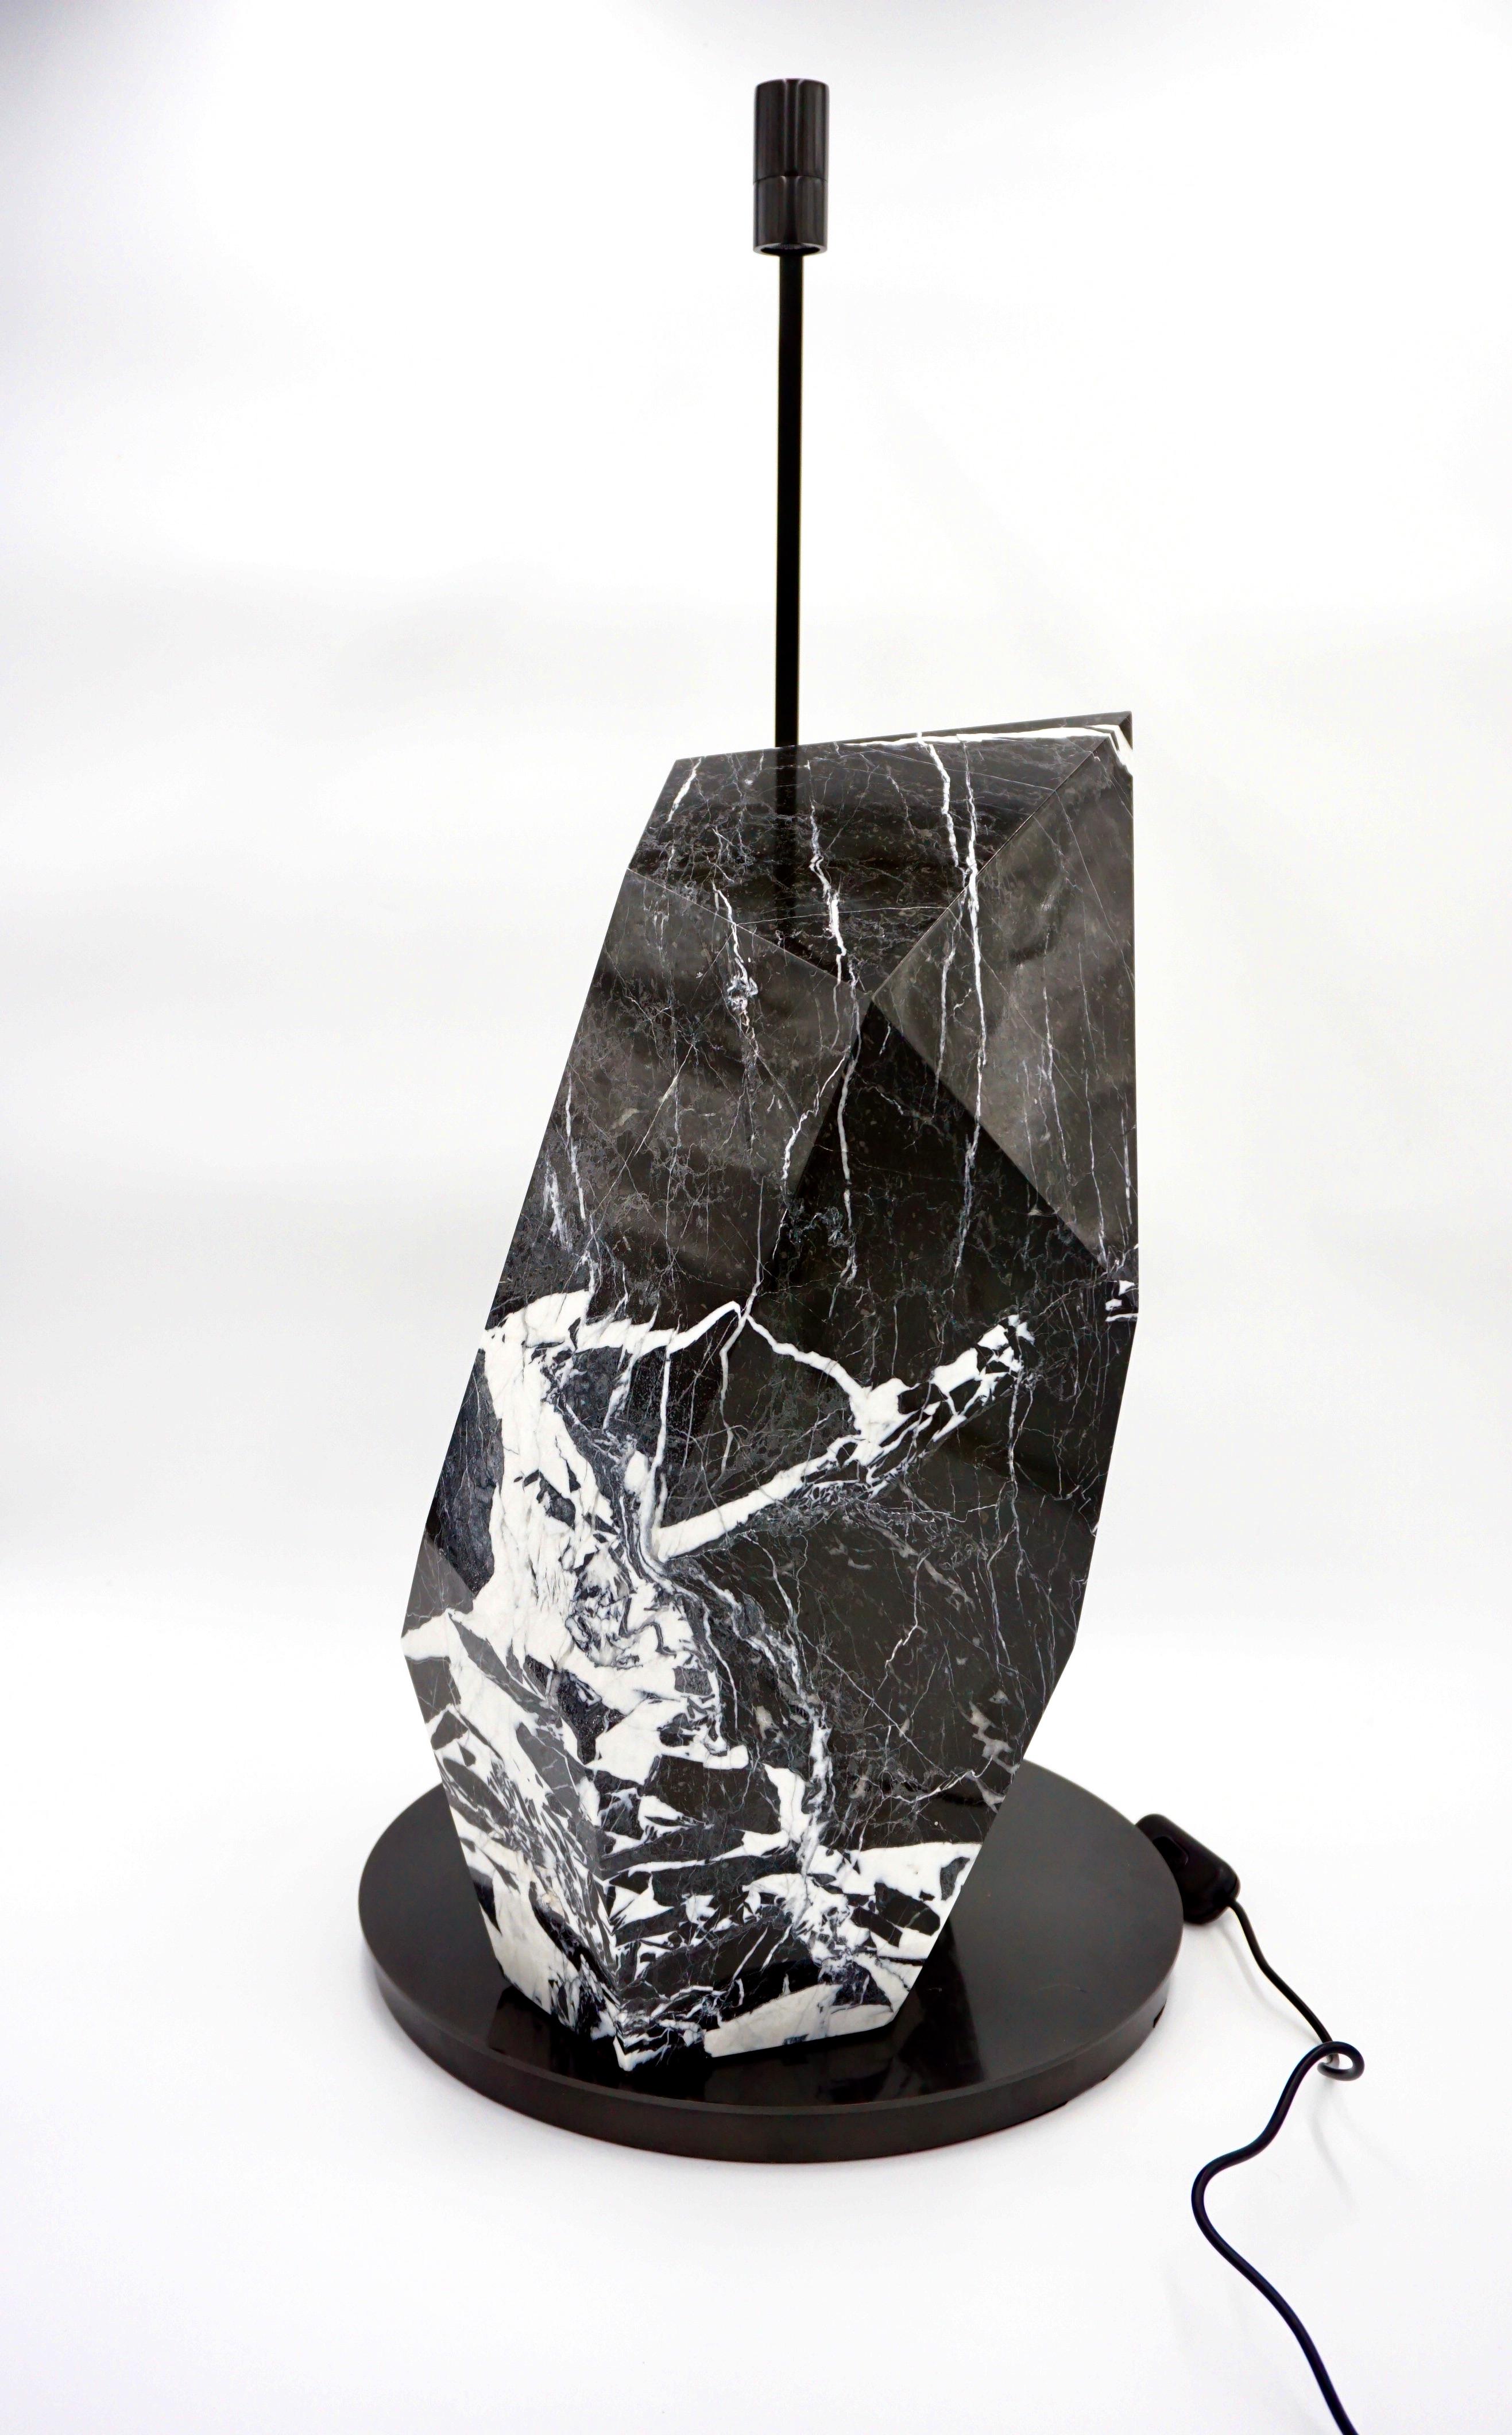 BLACK POLYHEDRUM lampe de table sculpturale en marbre conçue par Lorenzo Ciompi, 2023
grand marbre noir antique sculpté et poli à la main pour obtenir une patine brillante
sur une grande lampe de table originale en laiton satiné ; led  Lumière de